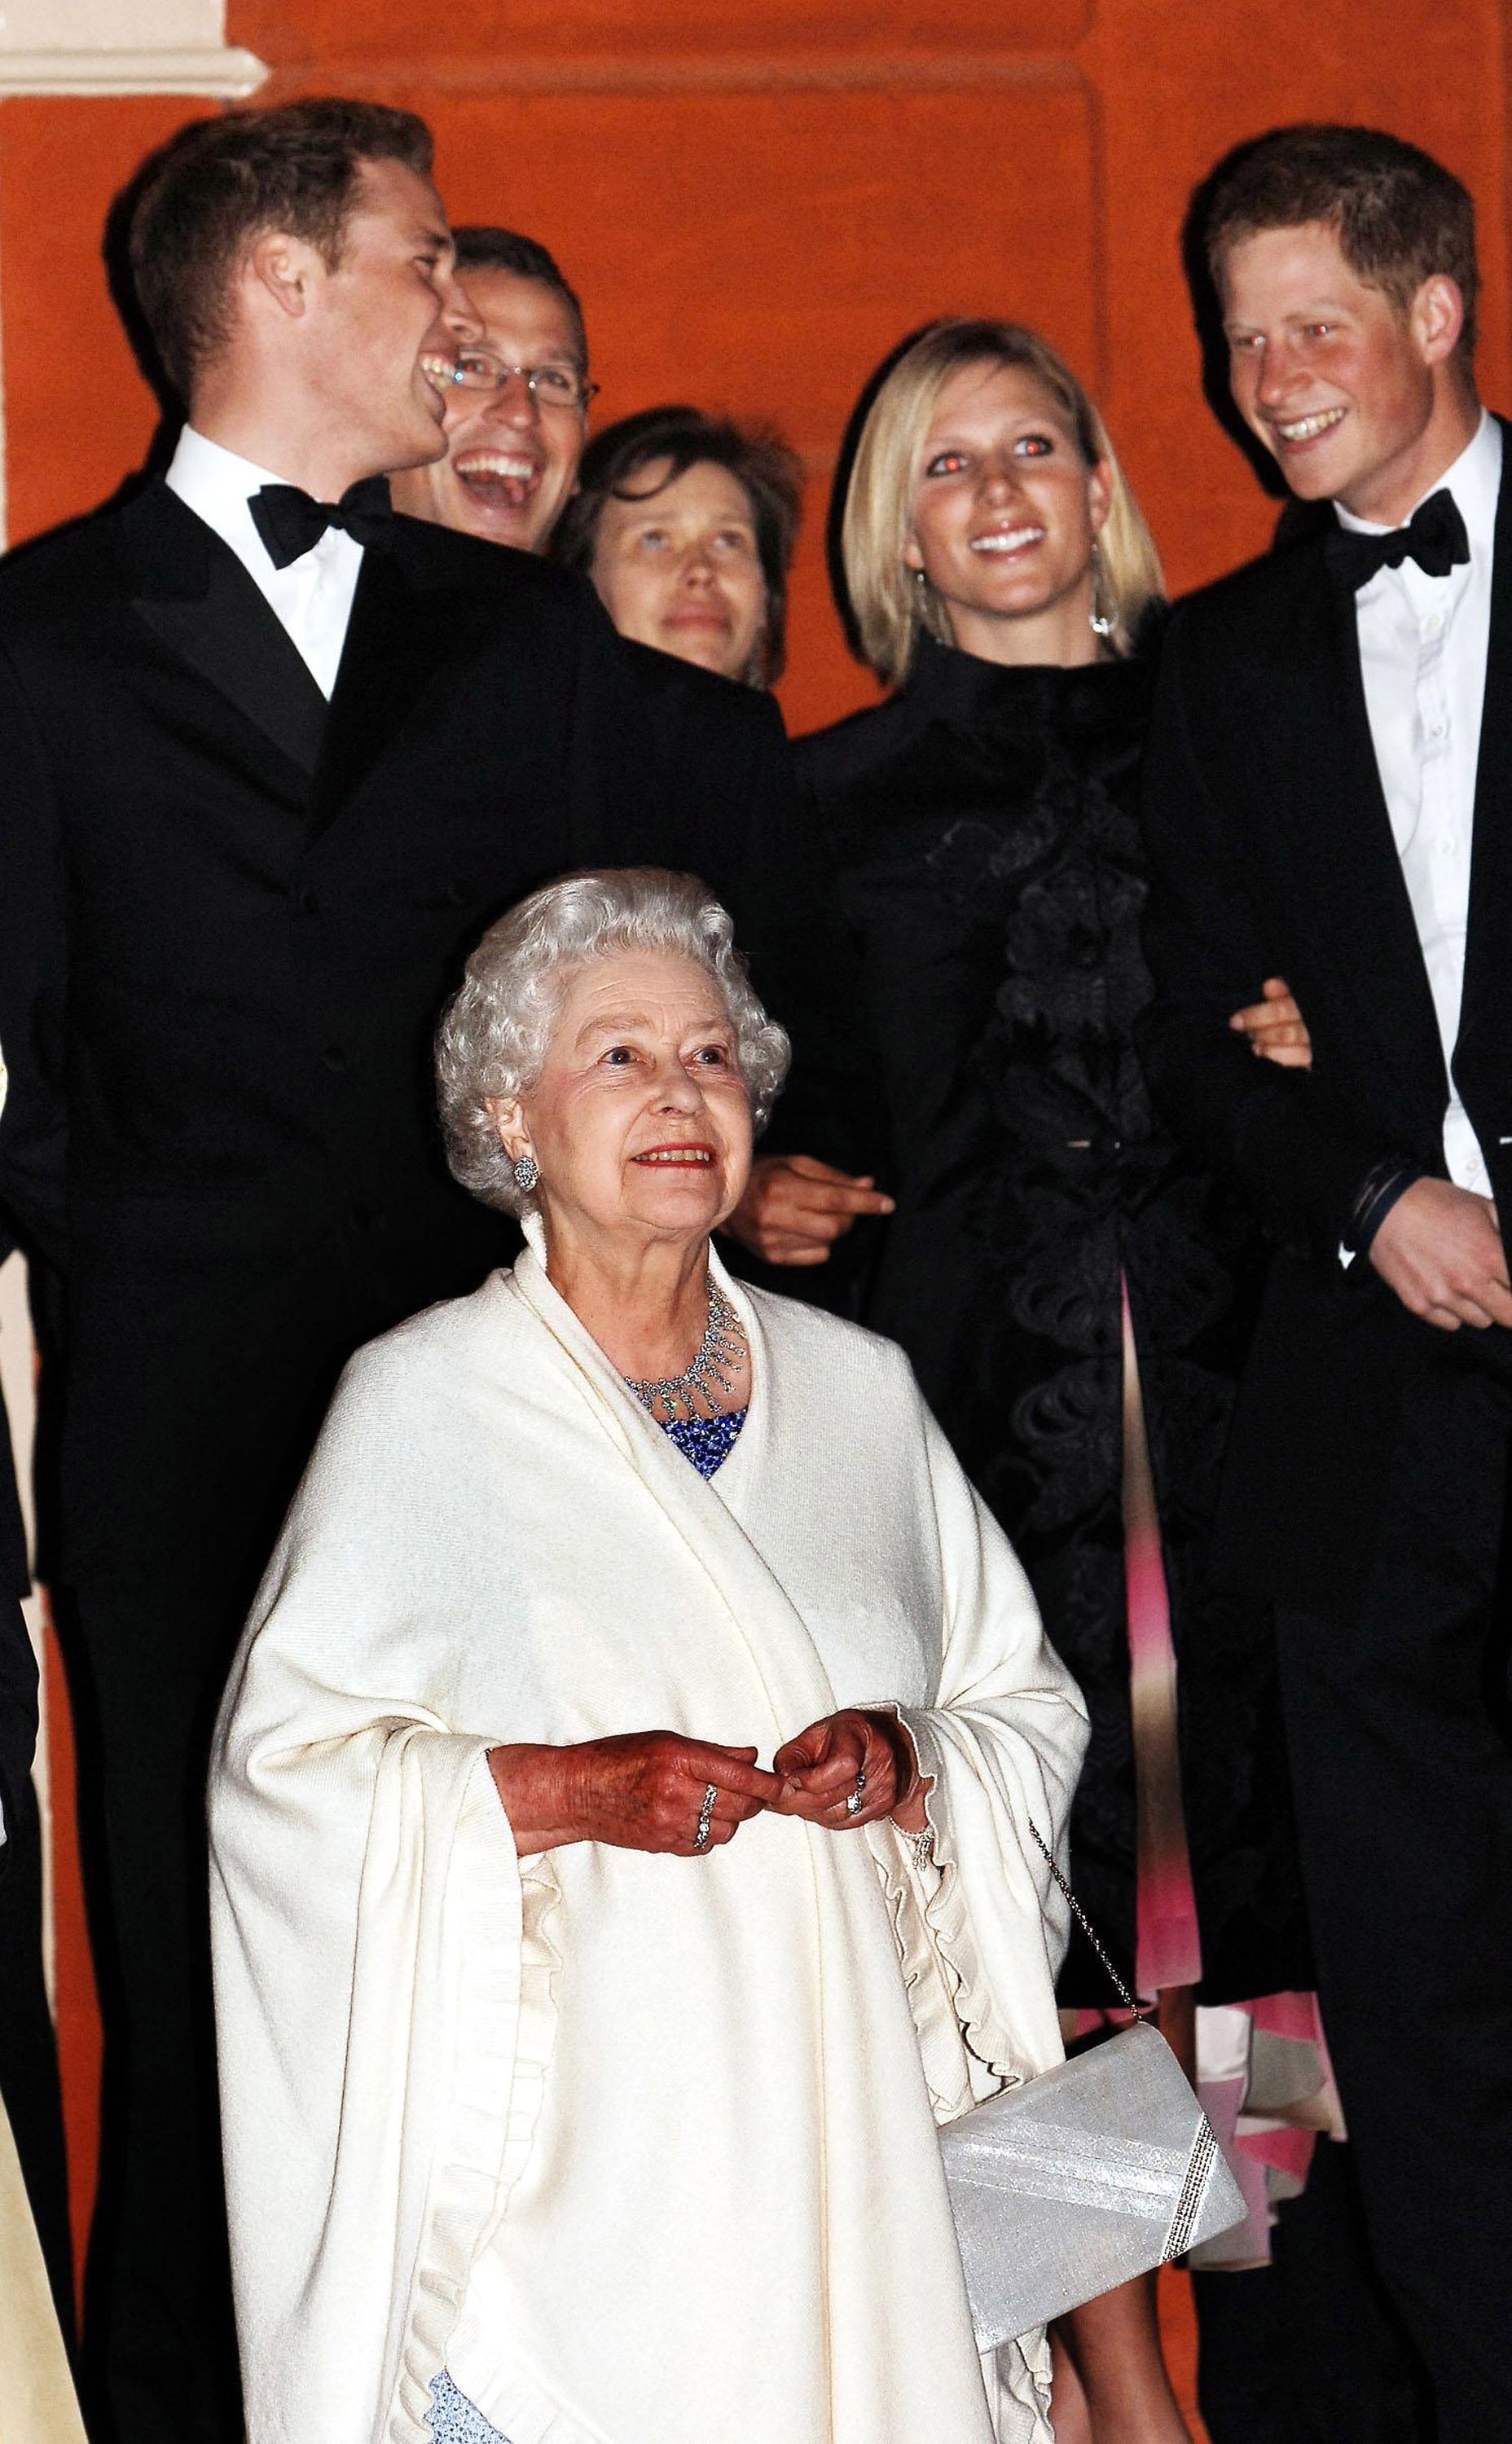 Königin Elizabeth ll. sieht sich ein Feuerwerk an, während vier ihrer Enkel, Prinz William, Peter Phillips, Zara Phillips und Prinz Harry, hinter ihr im Kew Palace im Westen Londons stehen, um den 80. Geburtstag der Königin am 21. April 2006 zu feiern | Quelle: Getty Images